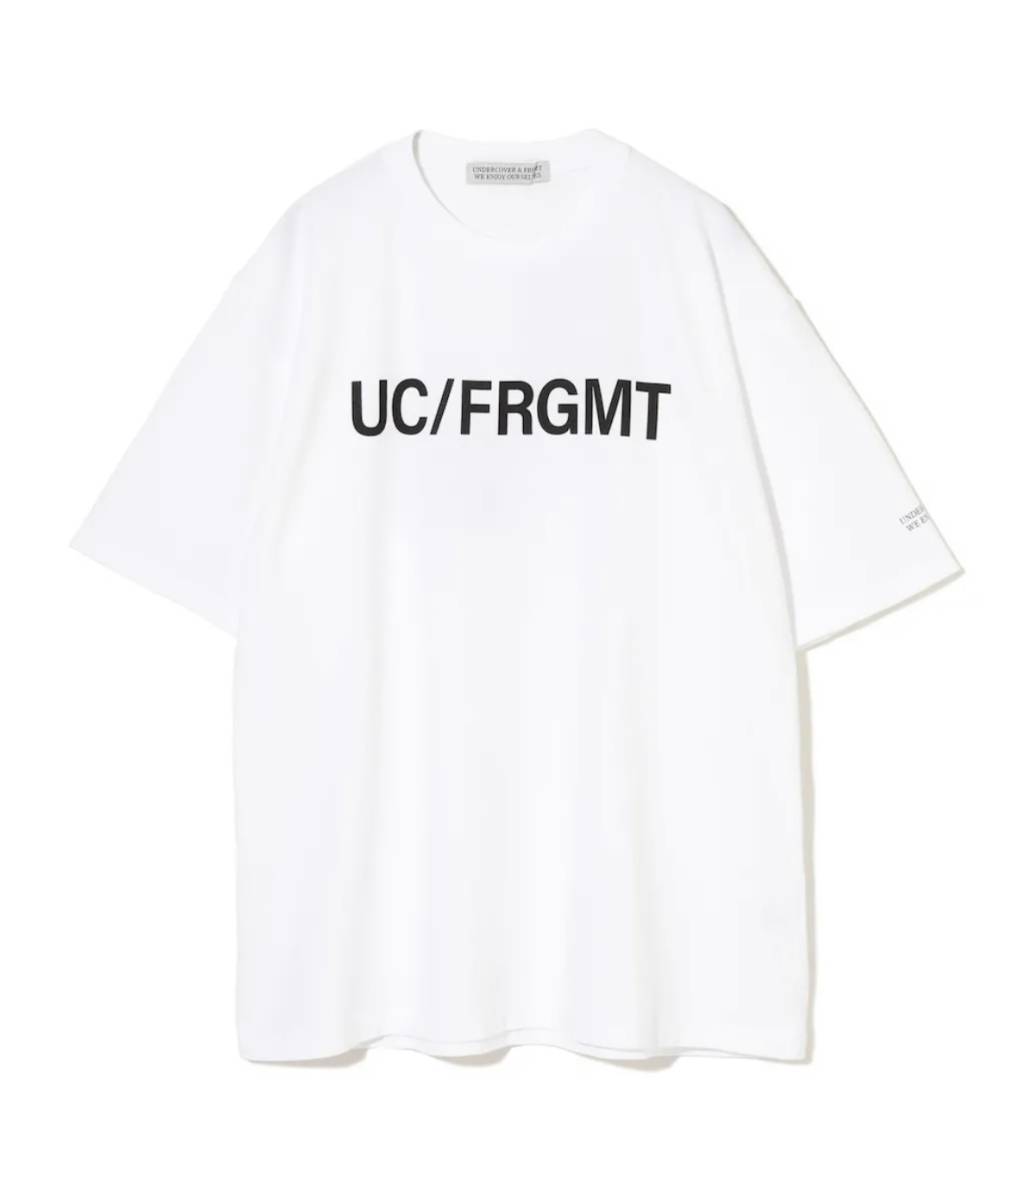 伊勢丹限定 UNDERCOVER fragment design TEE Tシャツ 3 L 白 white ホワイト_画像3